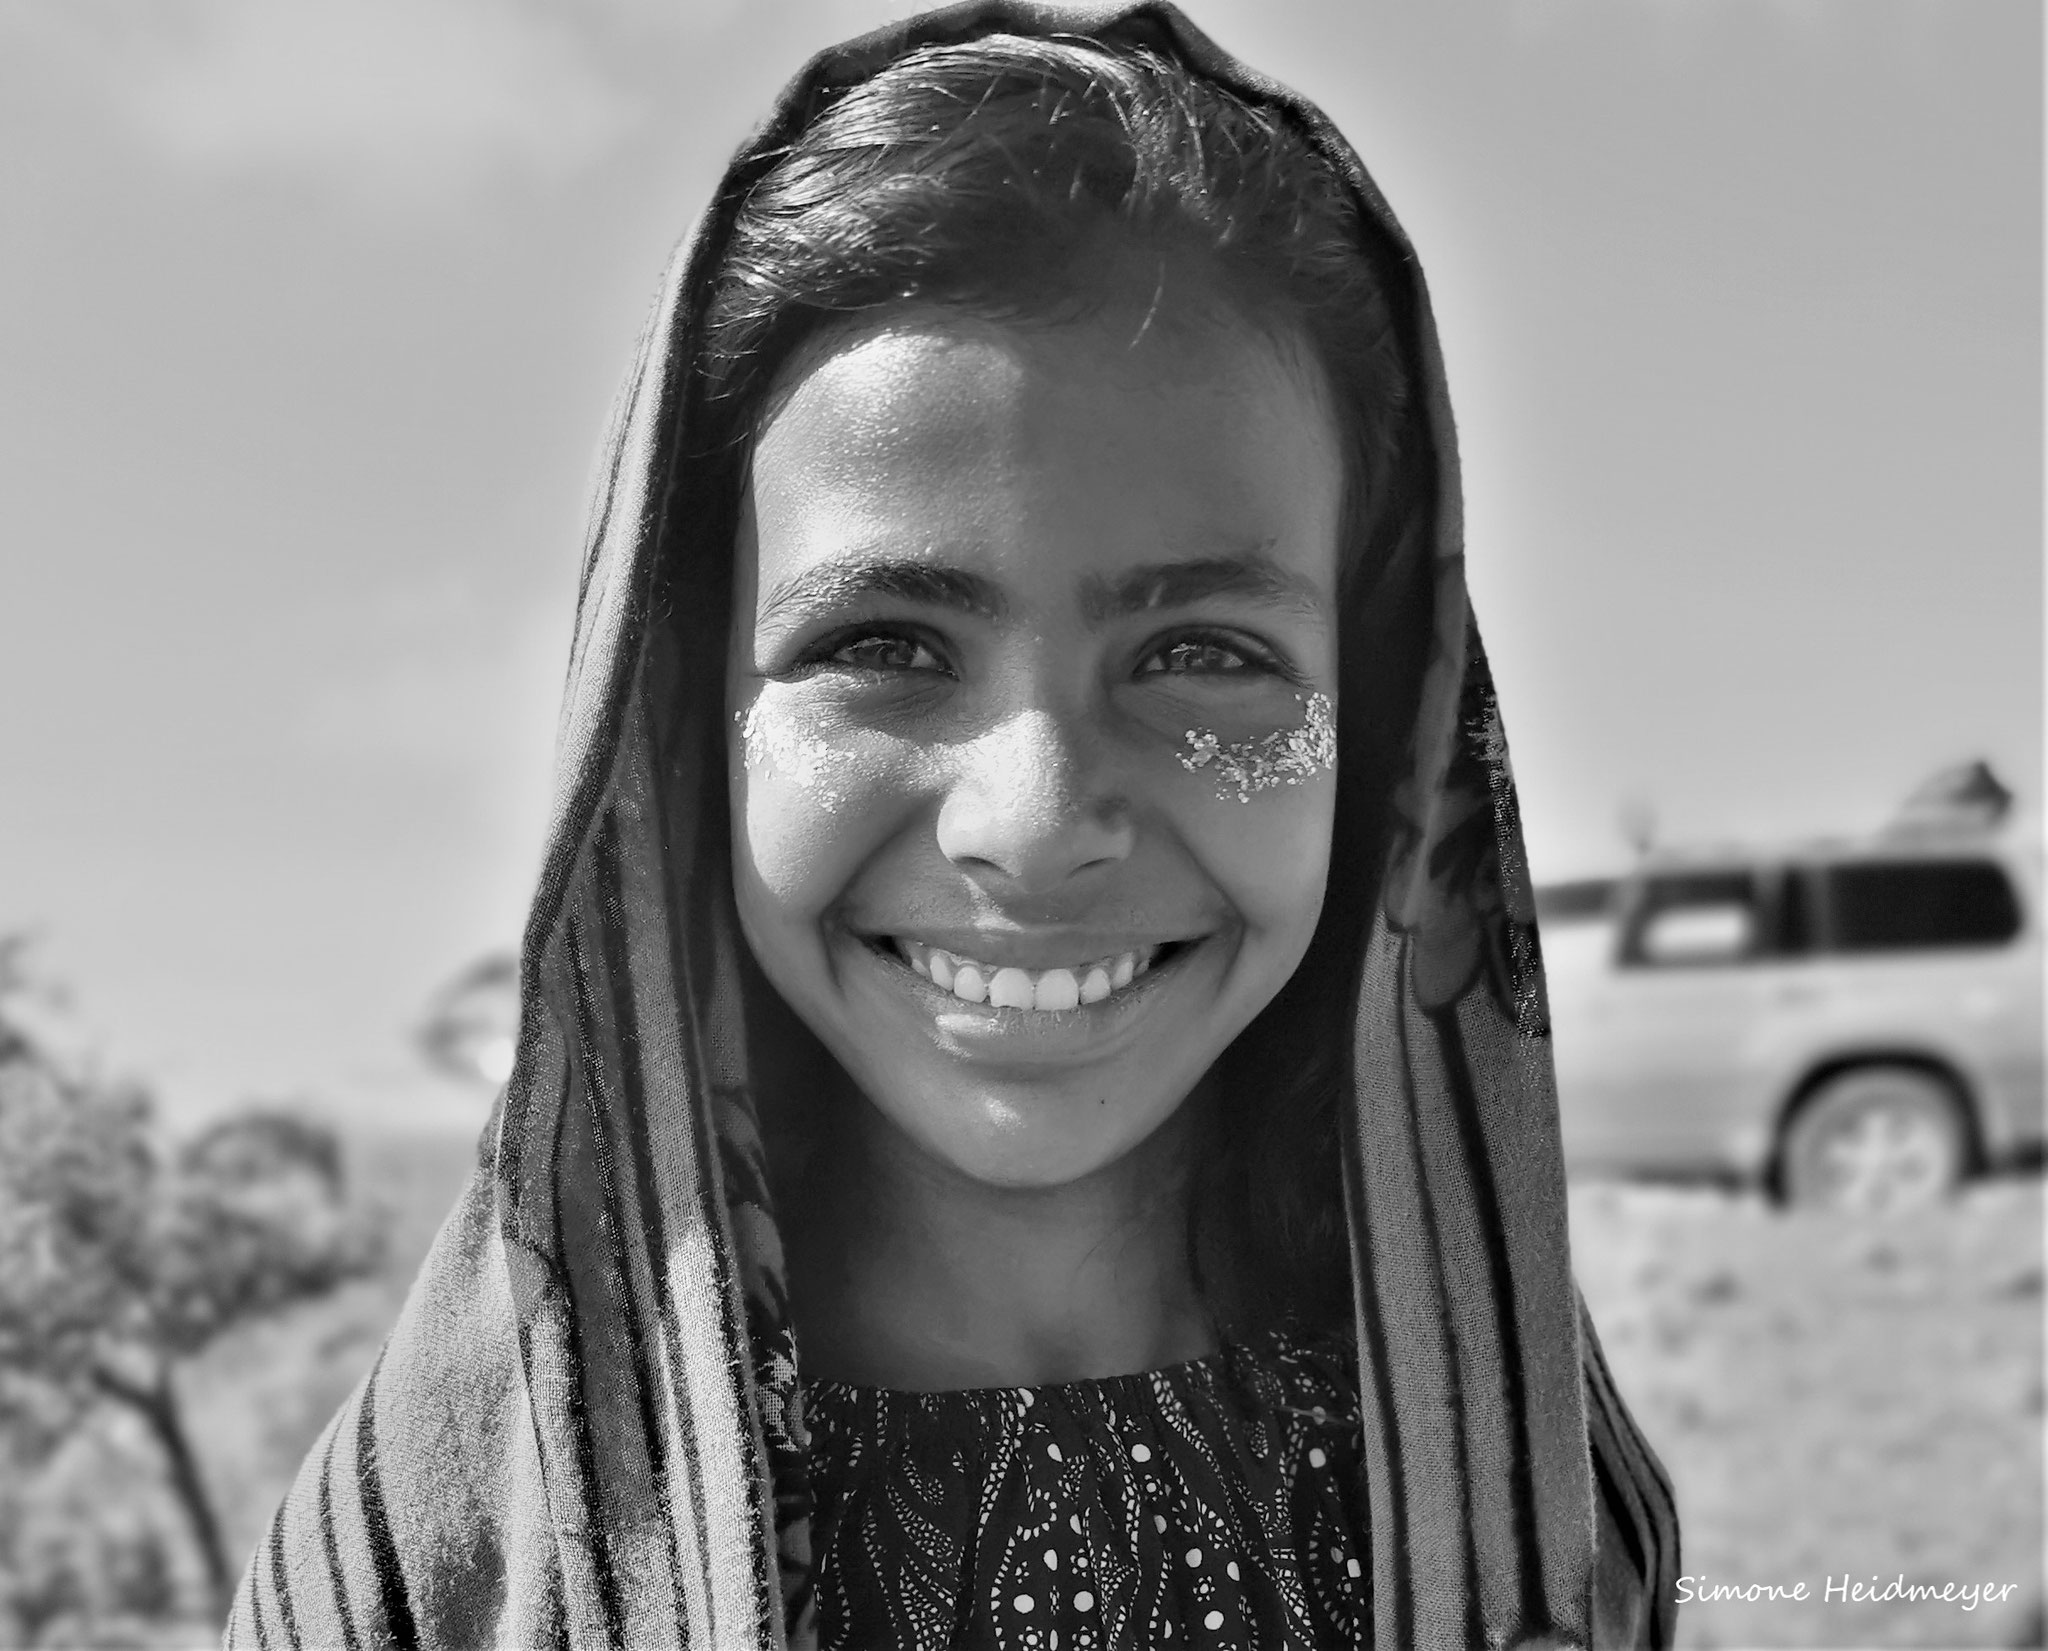 Das Mädchen in den Bergen von Sokotra, Jemen